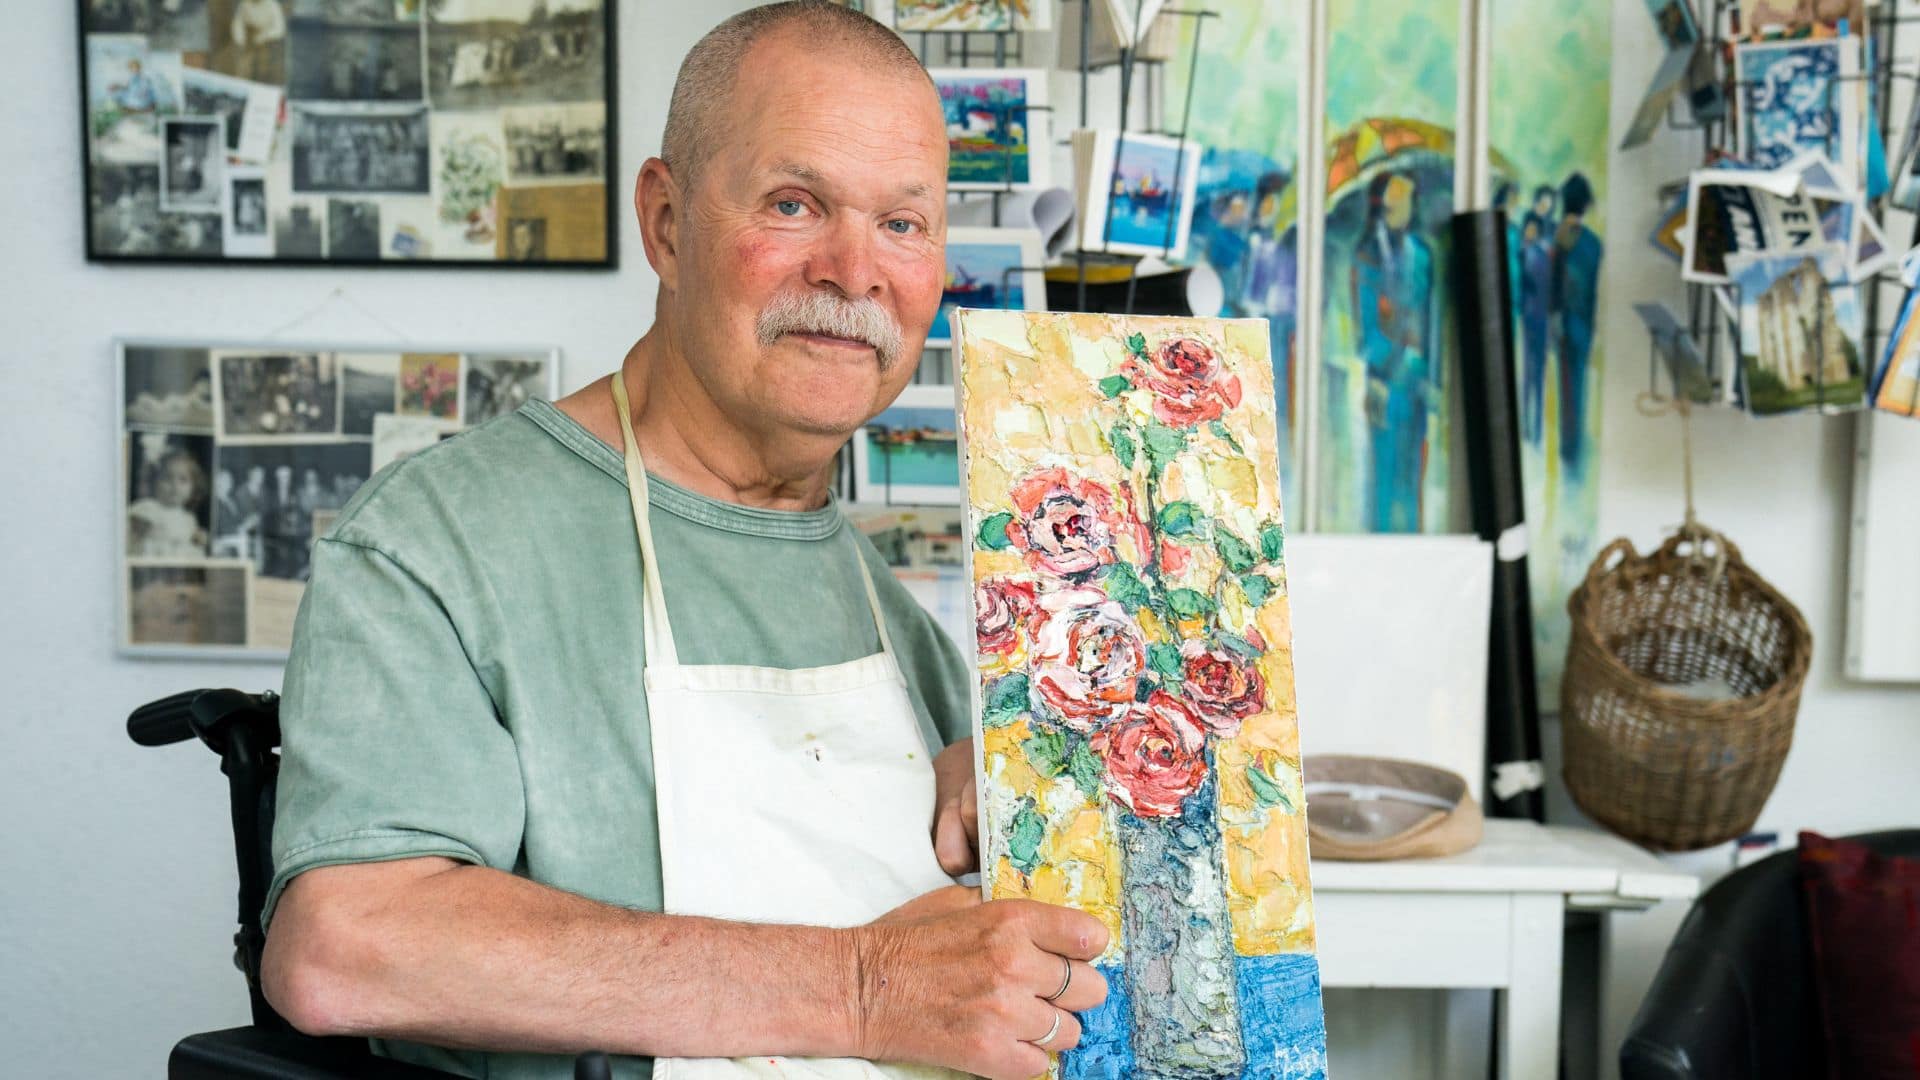 Christian Maeder avec son tableau représentant un vase de roses